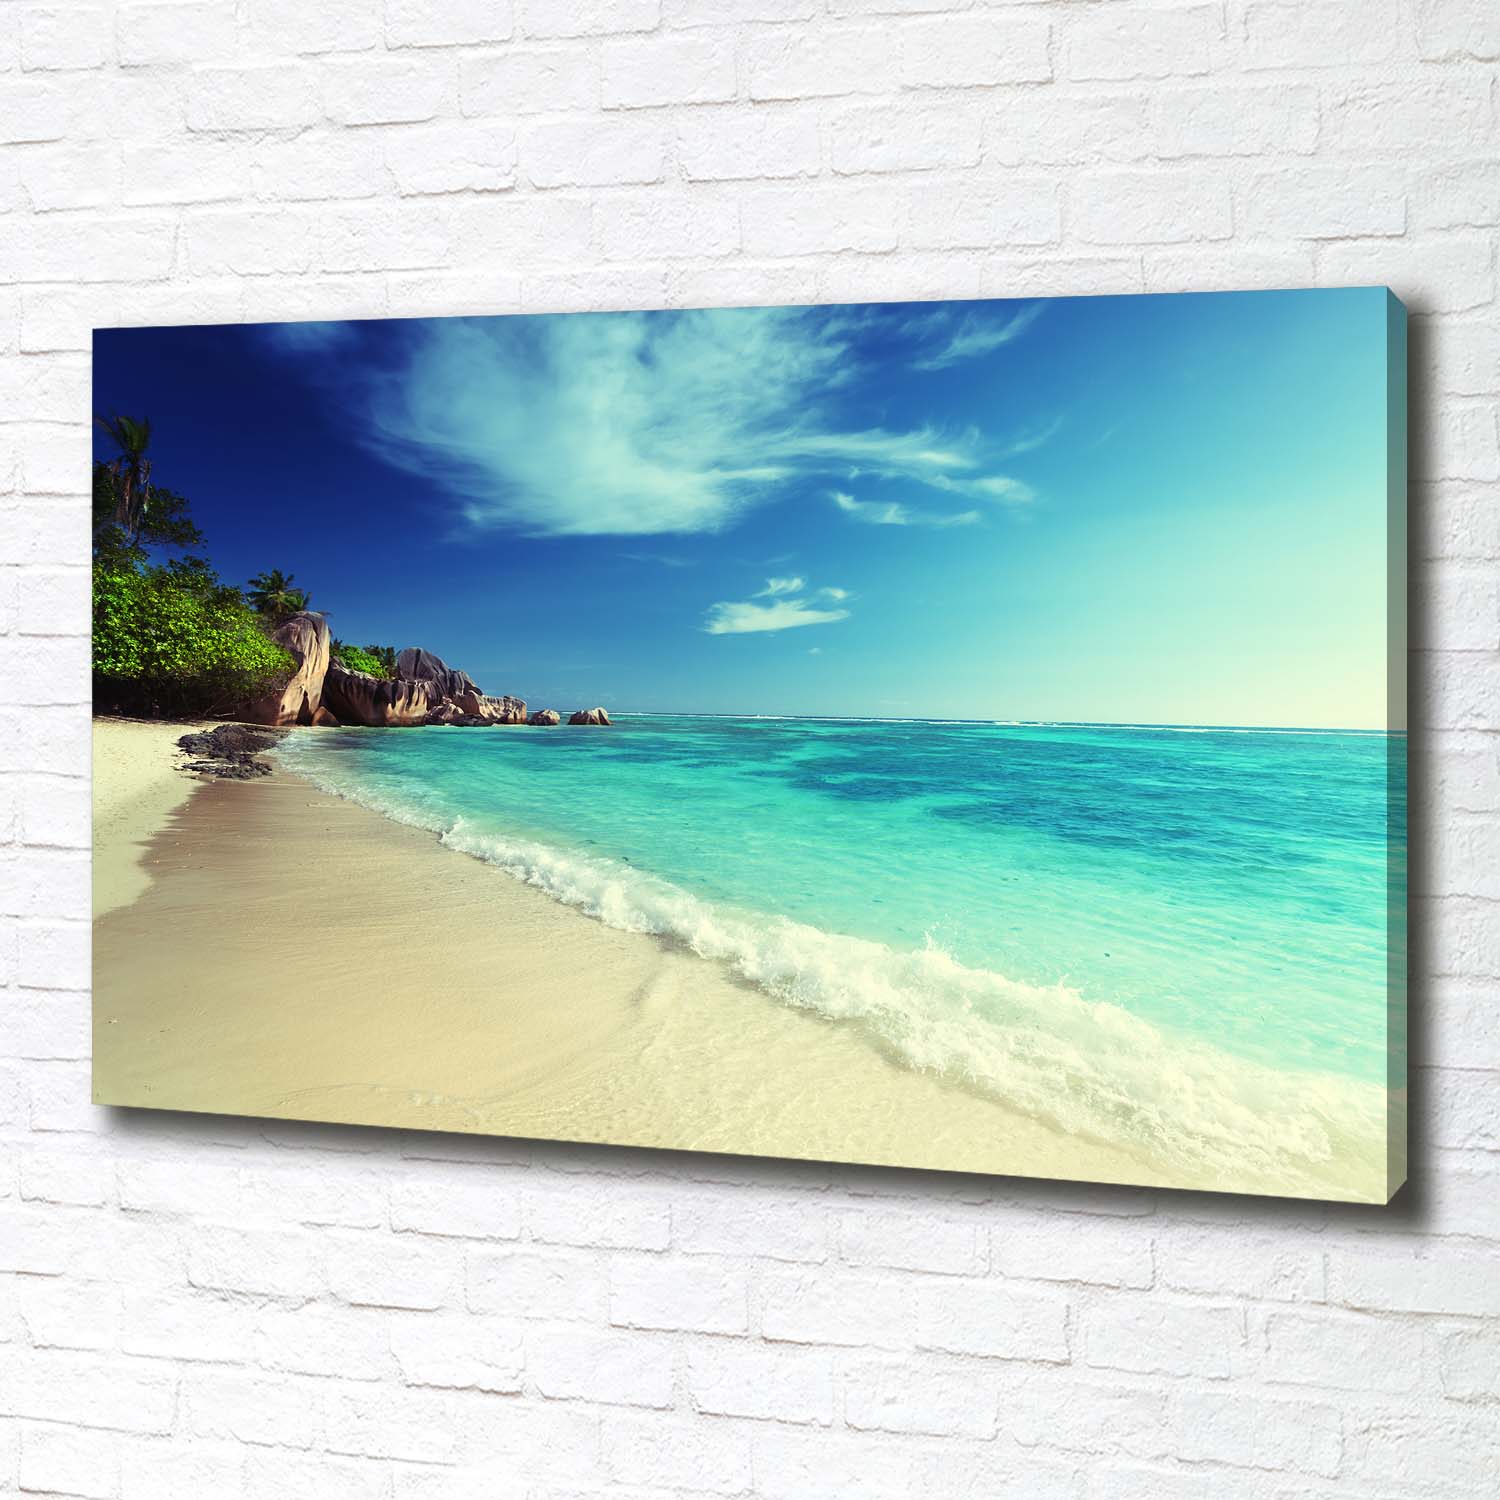 Glas-Bild Wandbilder Druck auf Glas 100x70 Deko Landschaften Seychellen Strand